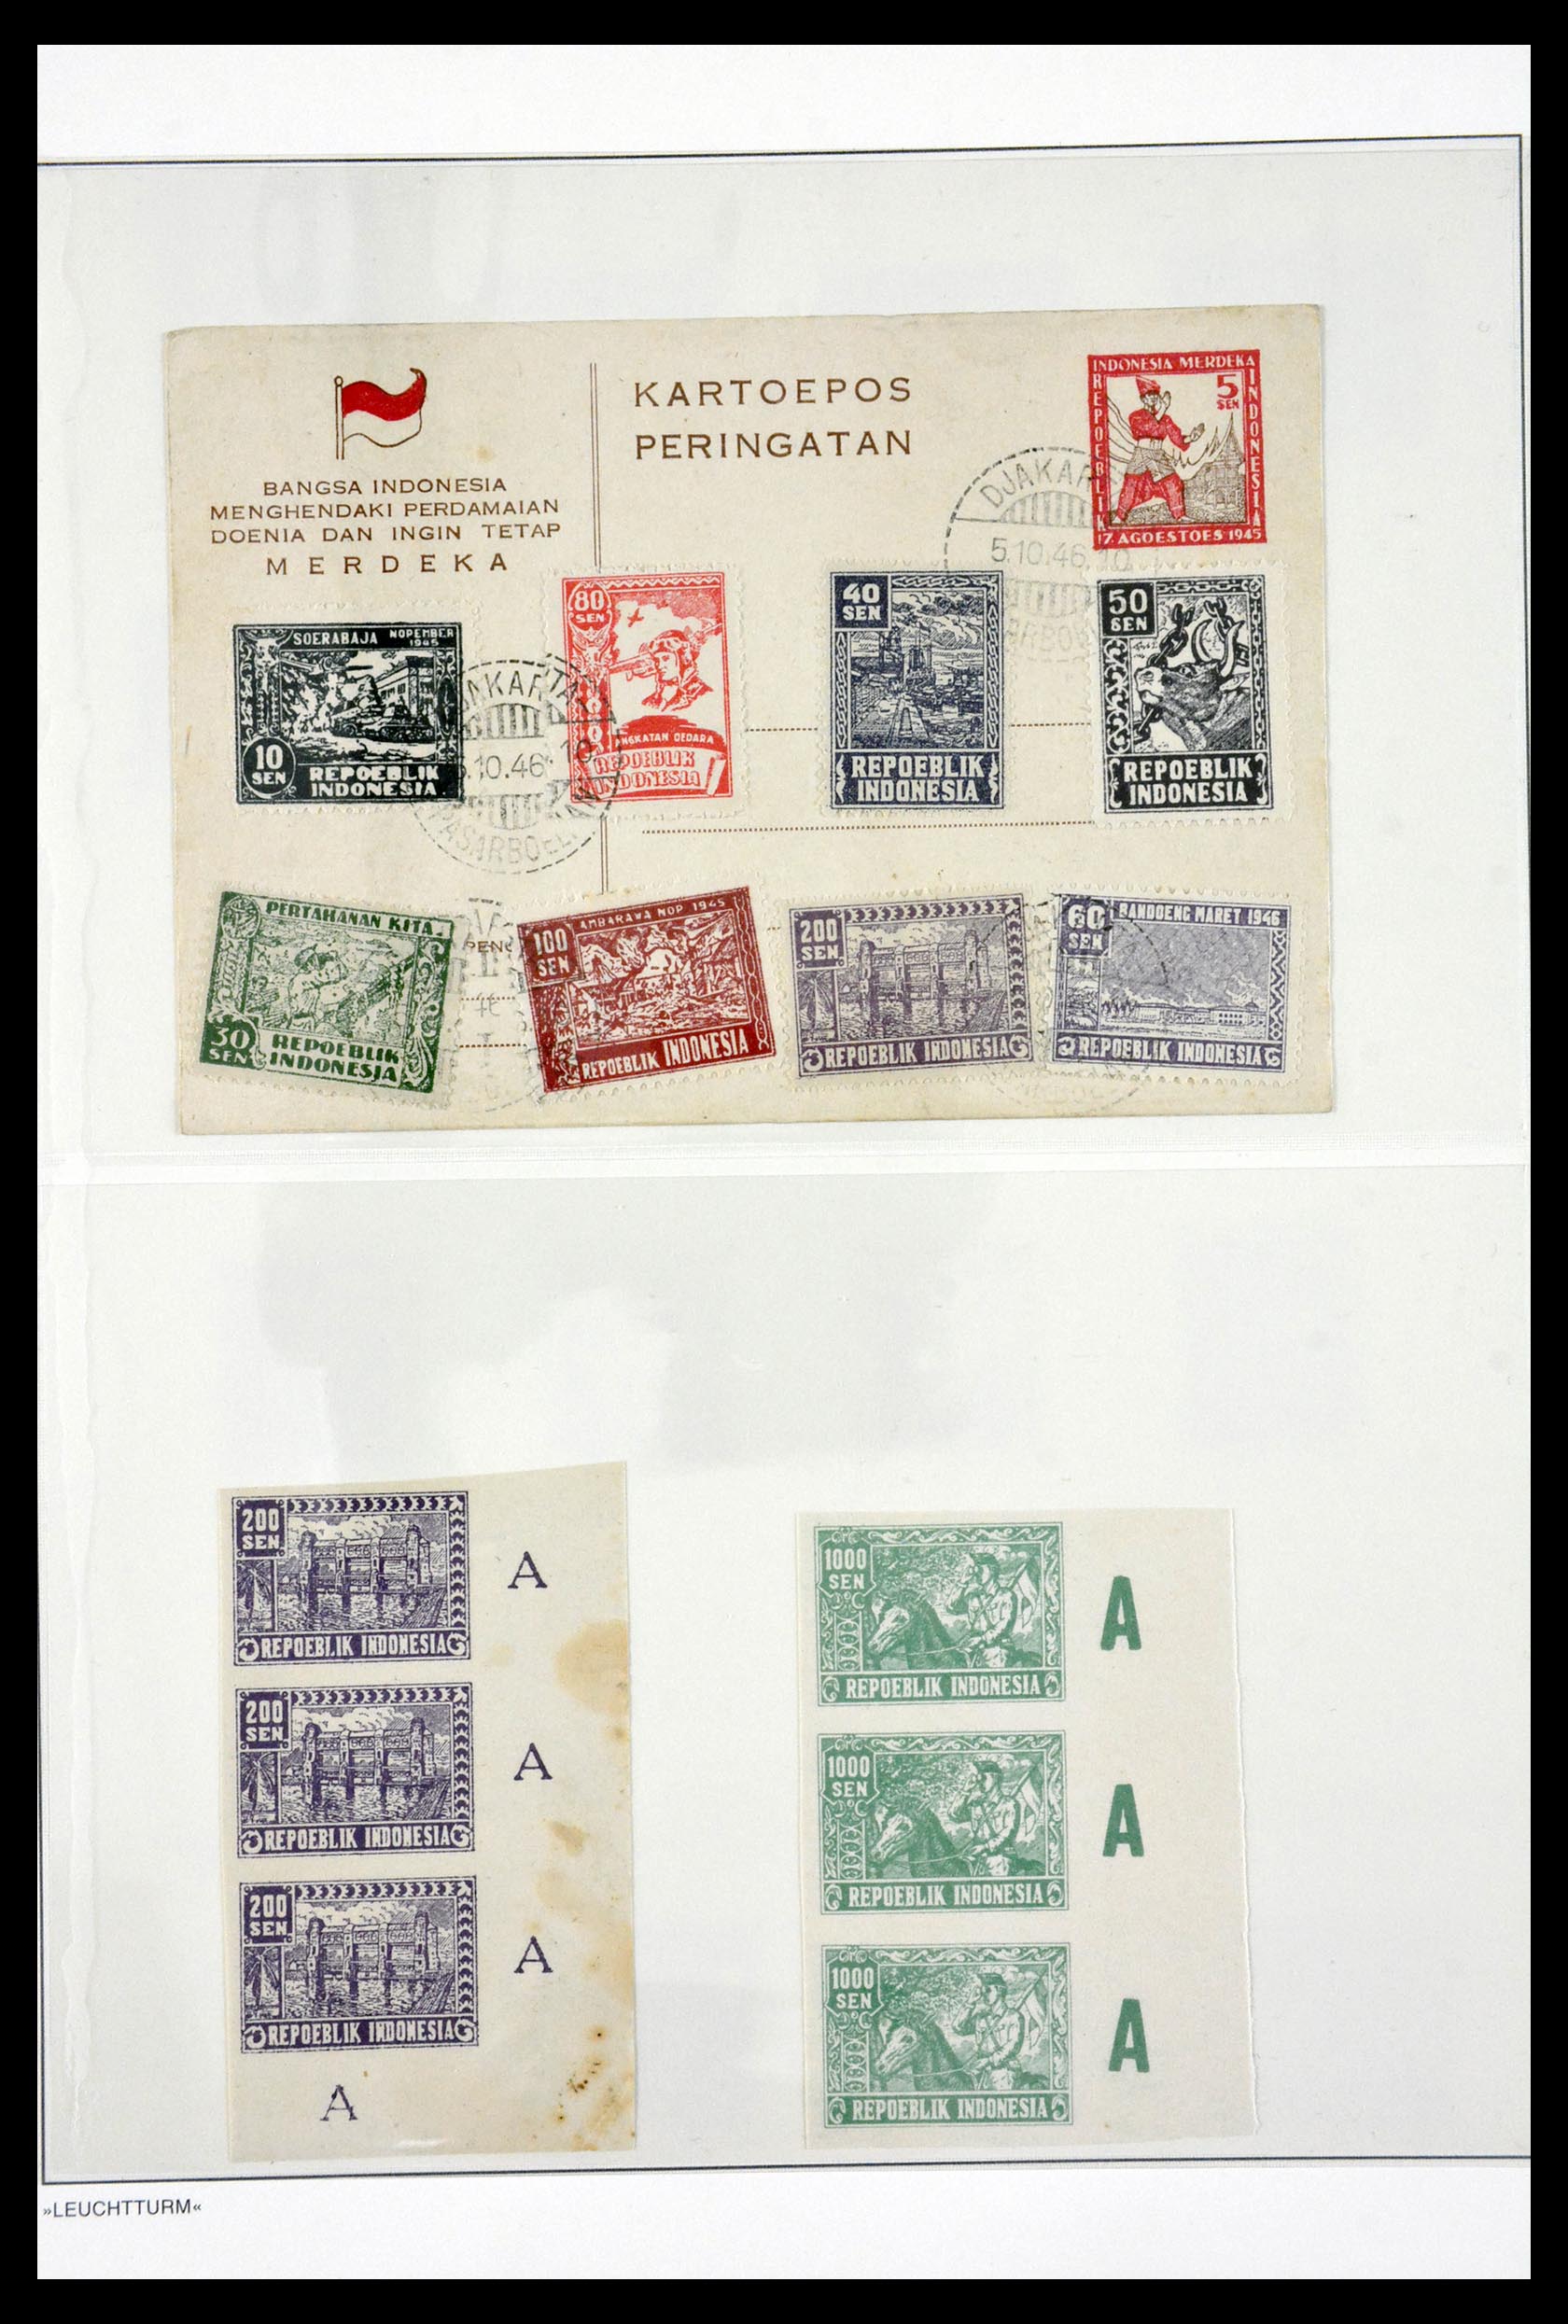 29786 038 - 29786 Interimperiod Indonesia 1945-1948.